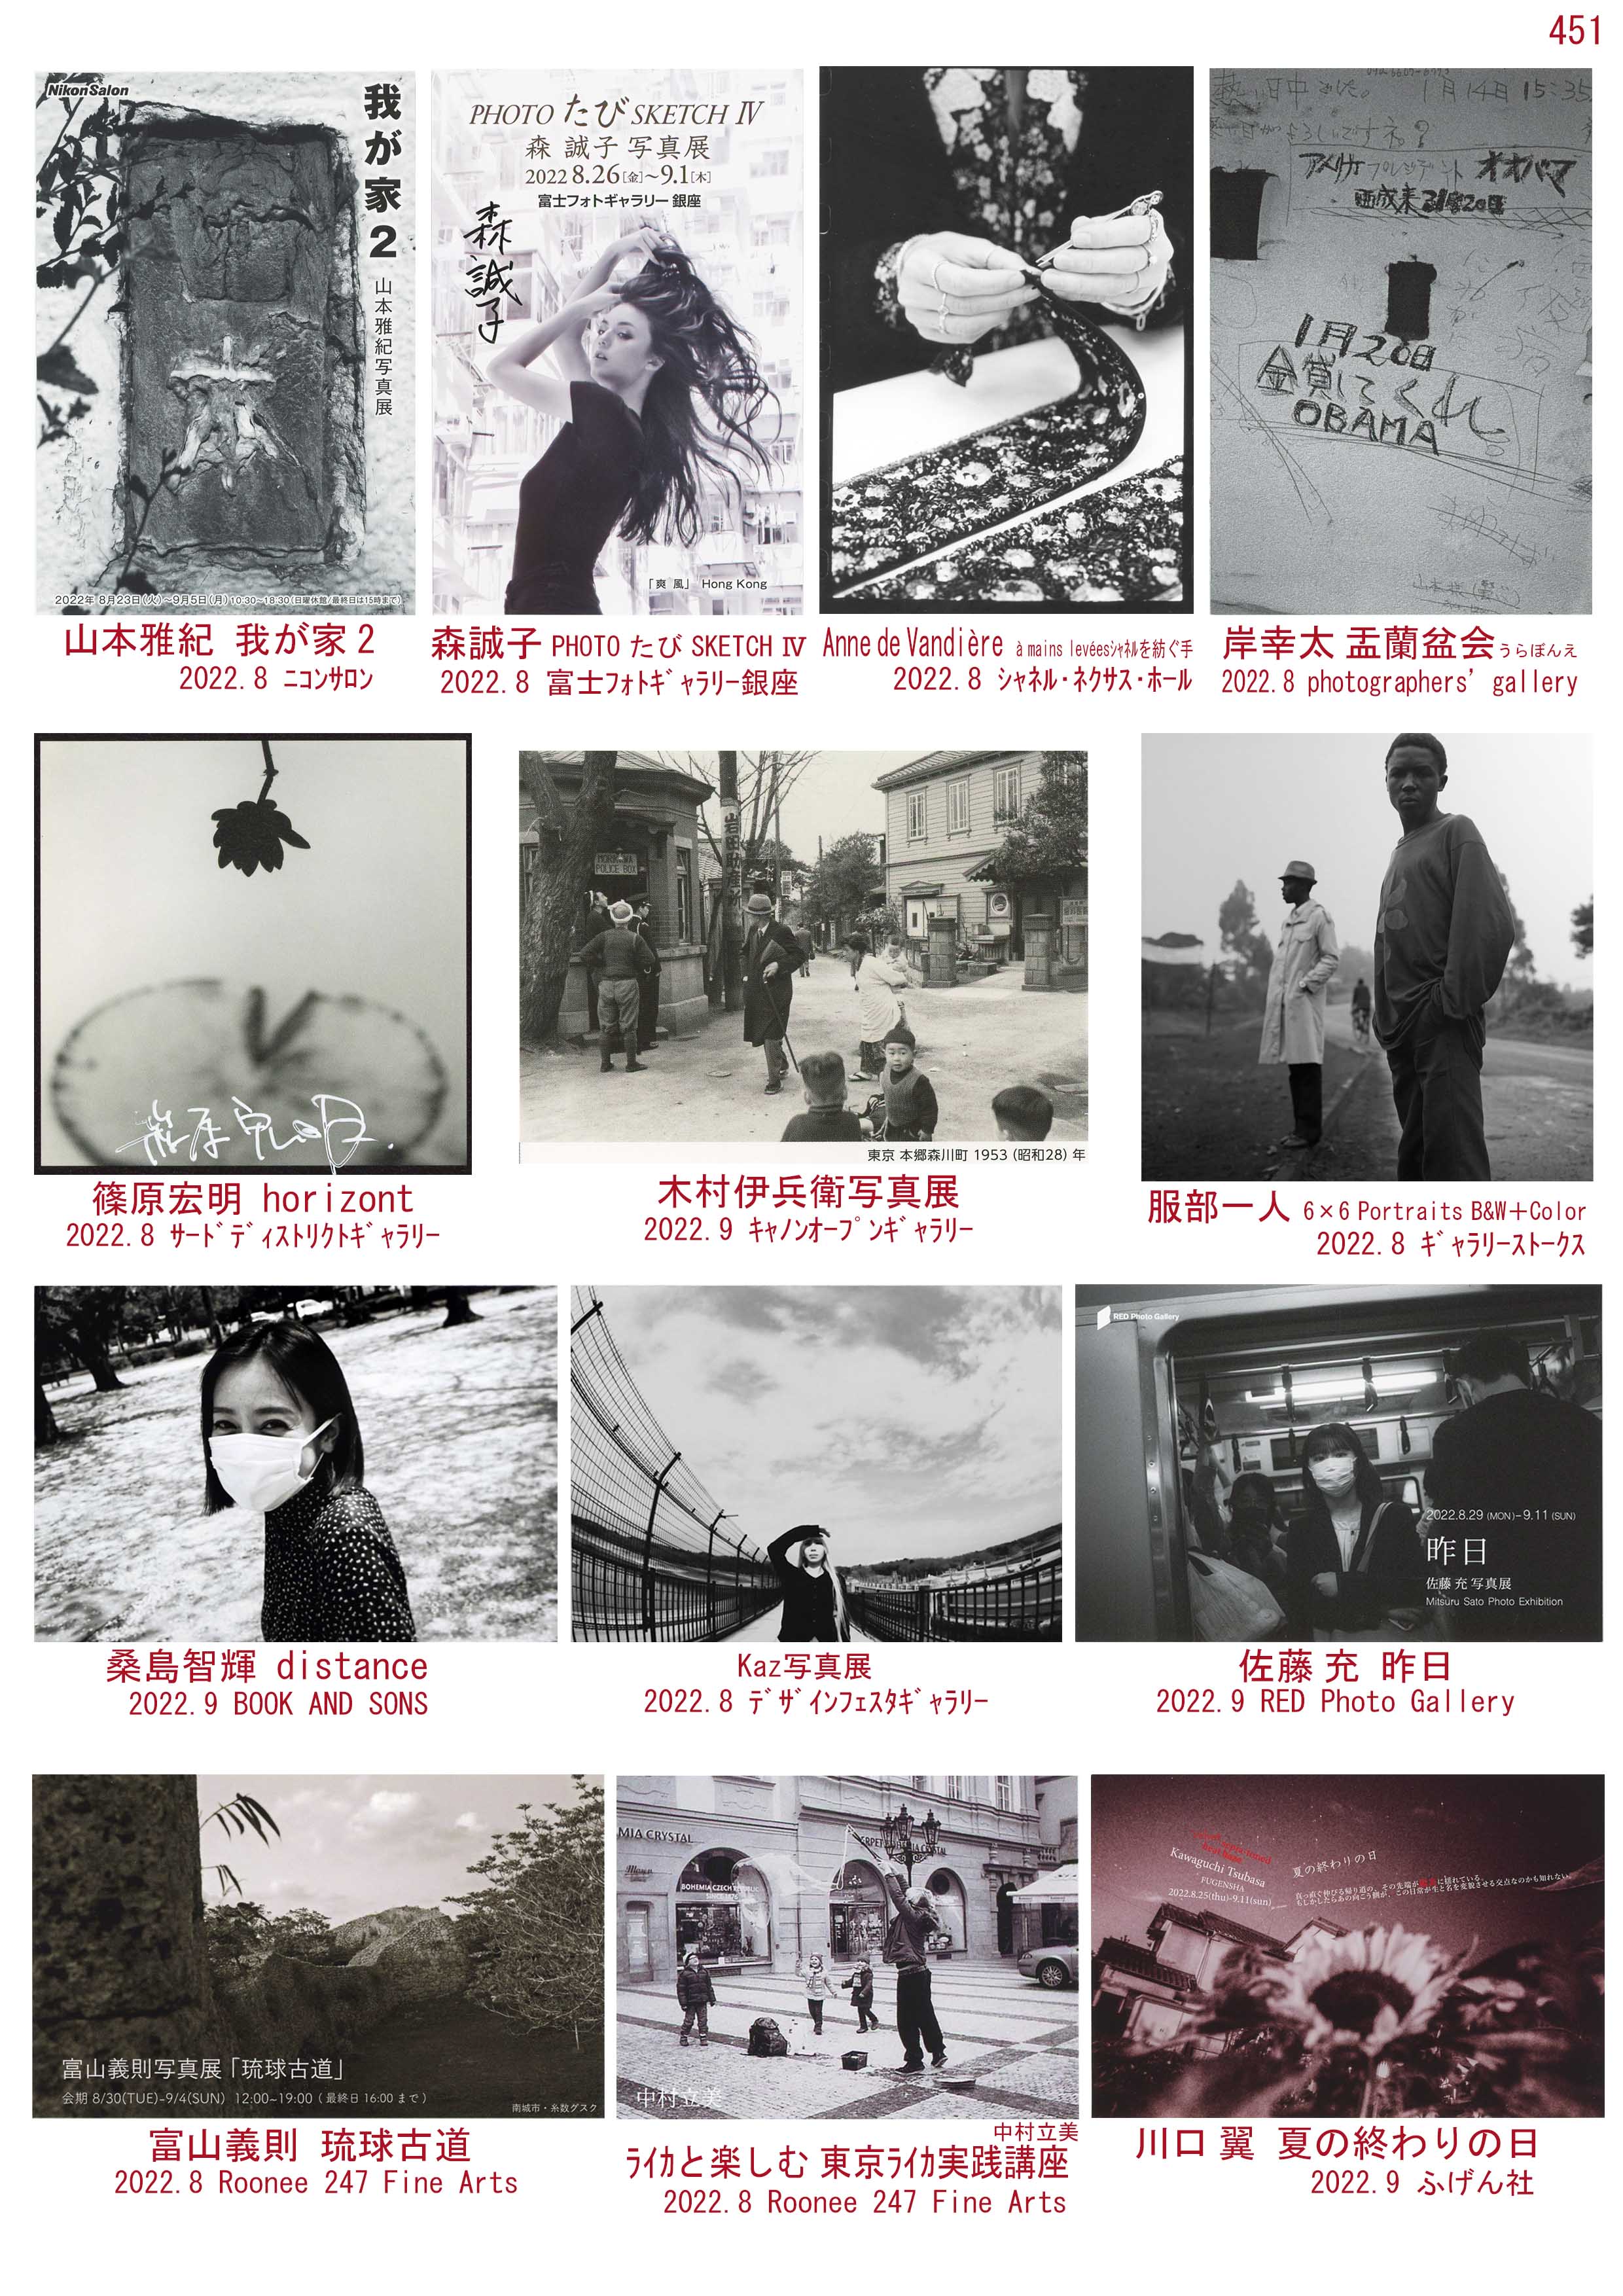 東京都写真美術館編 アウグスト・ザンダーと五味彬 映像工夫館作品展 1997-